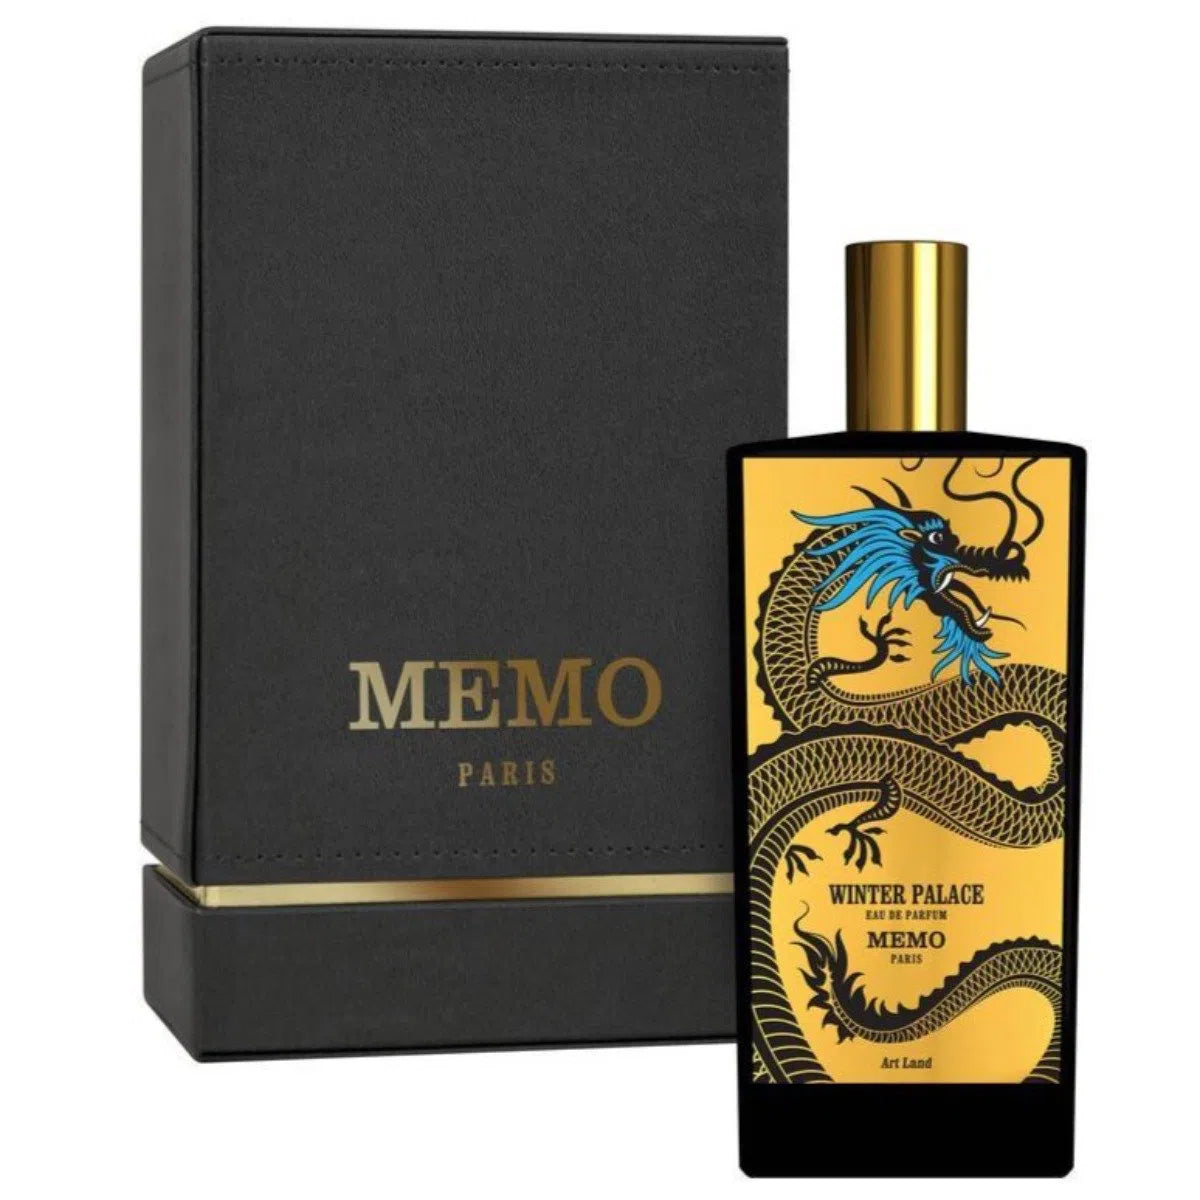 Perfume Memo Paris Winter Palace EDP (U) / 75 ml - 3700458619850- Prive Perfumes Honduras